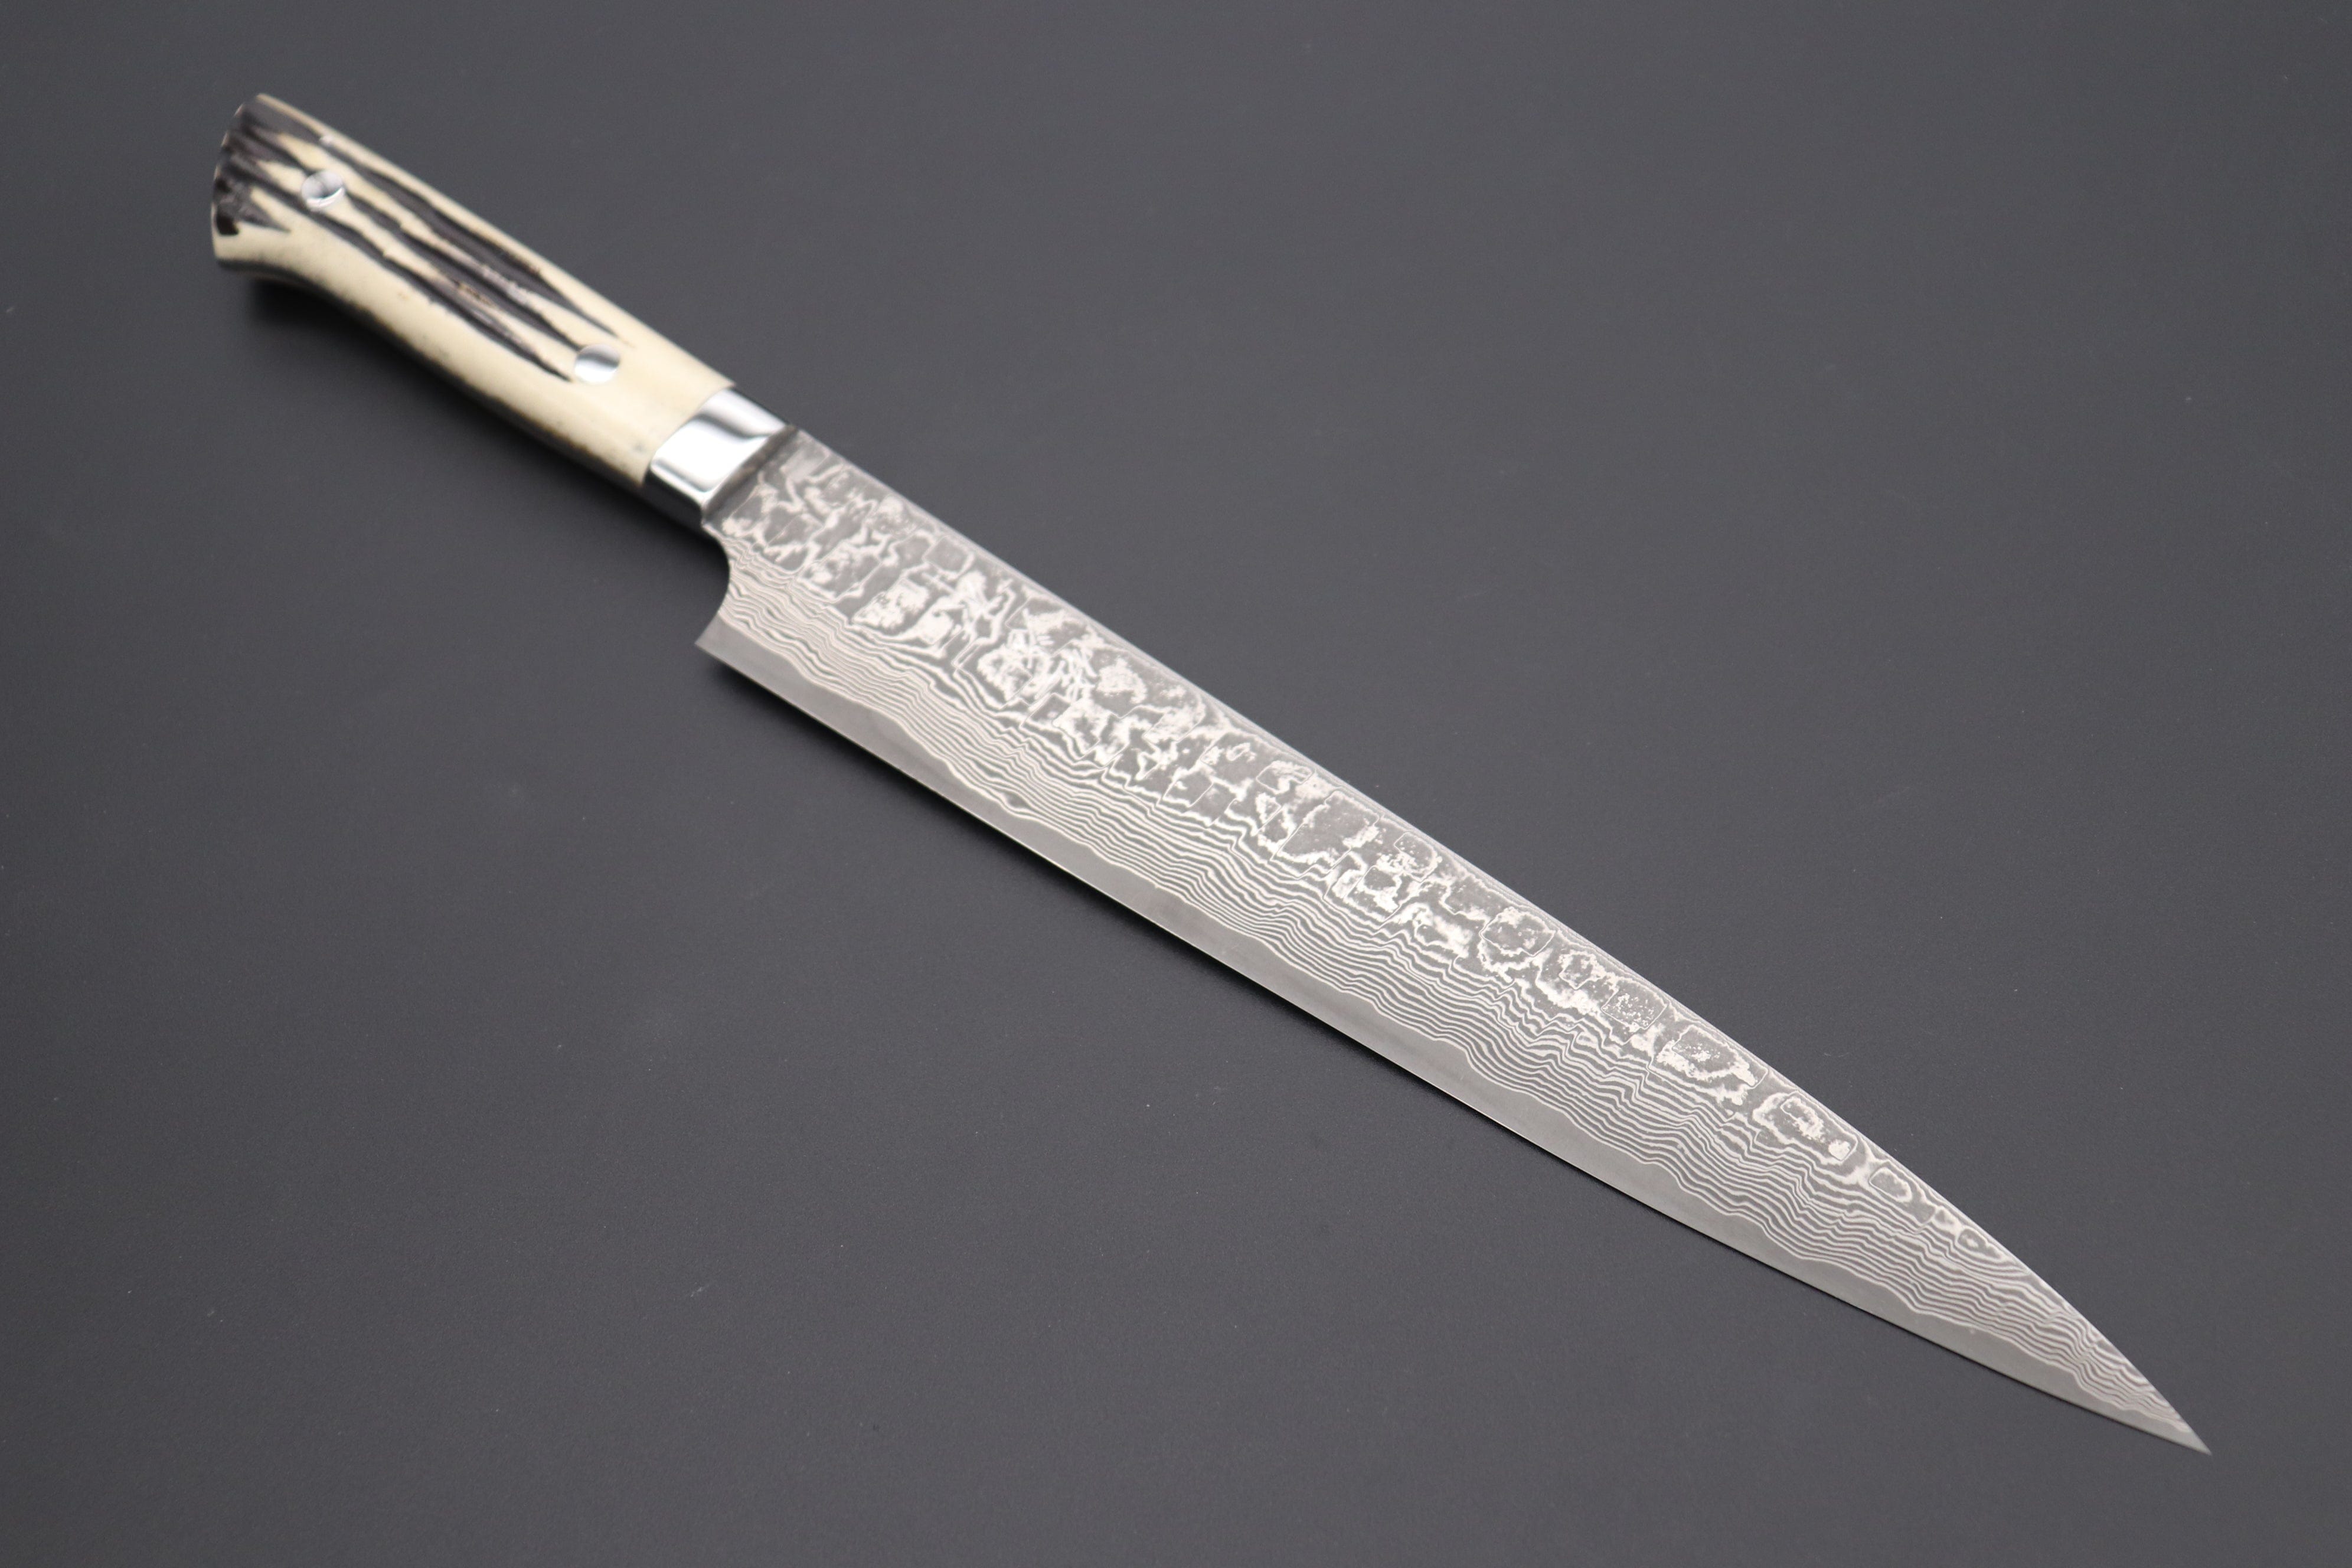 Handmade Damascus Steel Knives